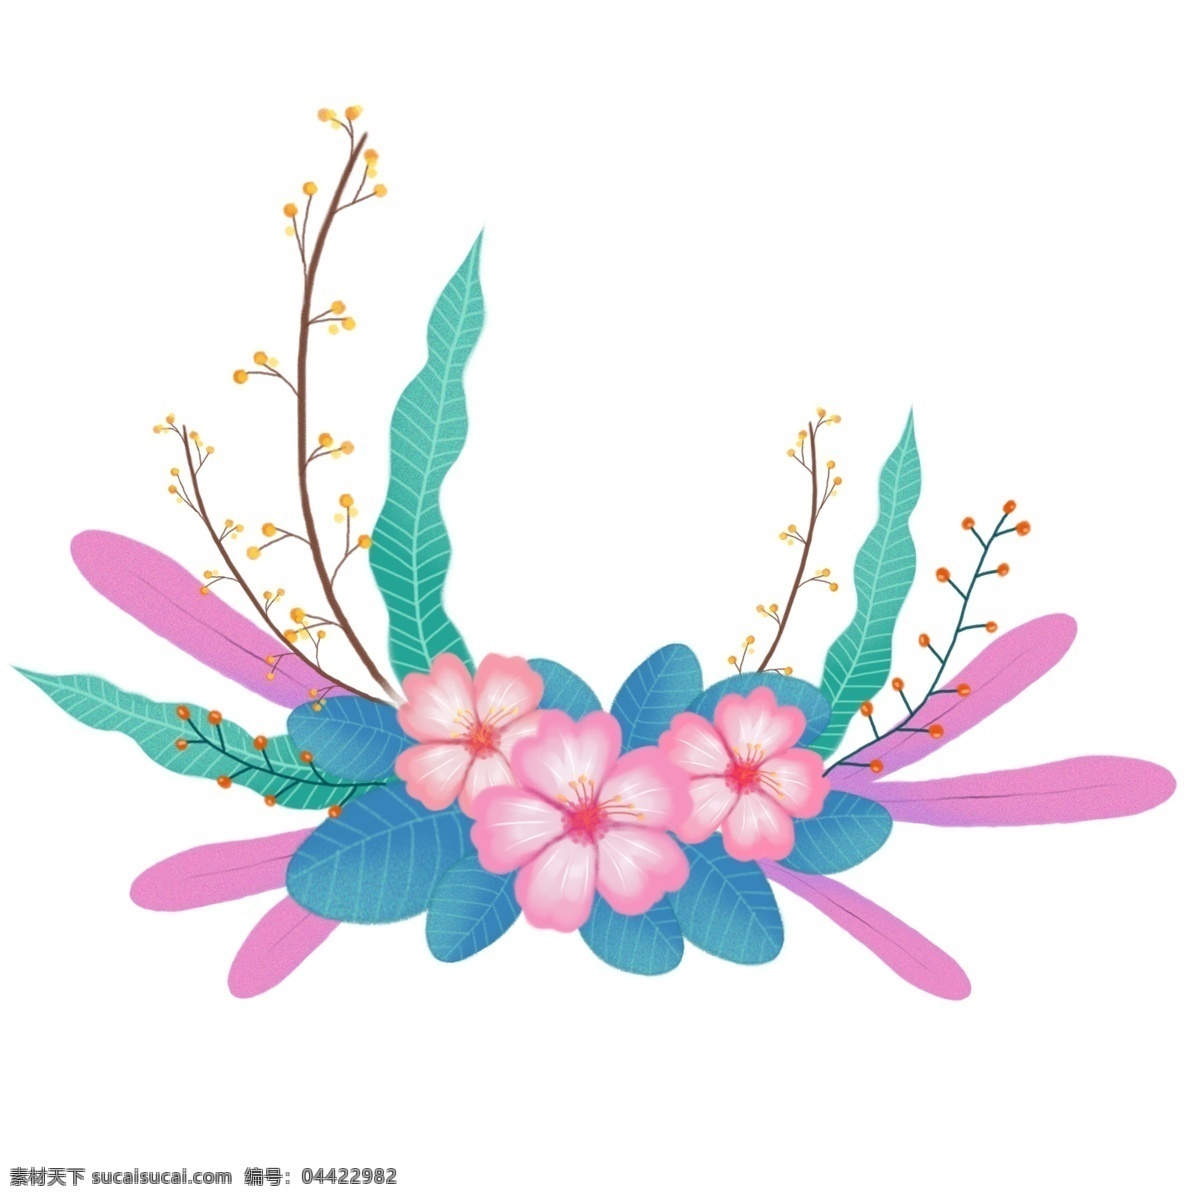 可爱 手绘 植物 花草 装饰 清新 卡通 花朵 插画 粉色